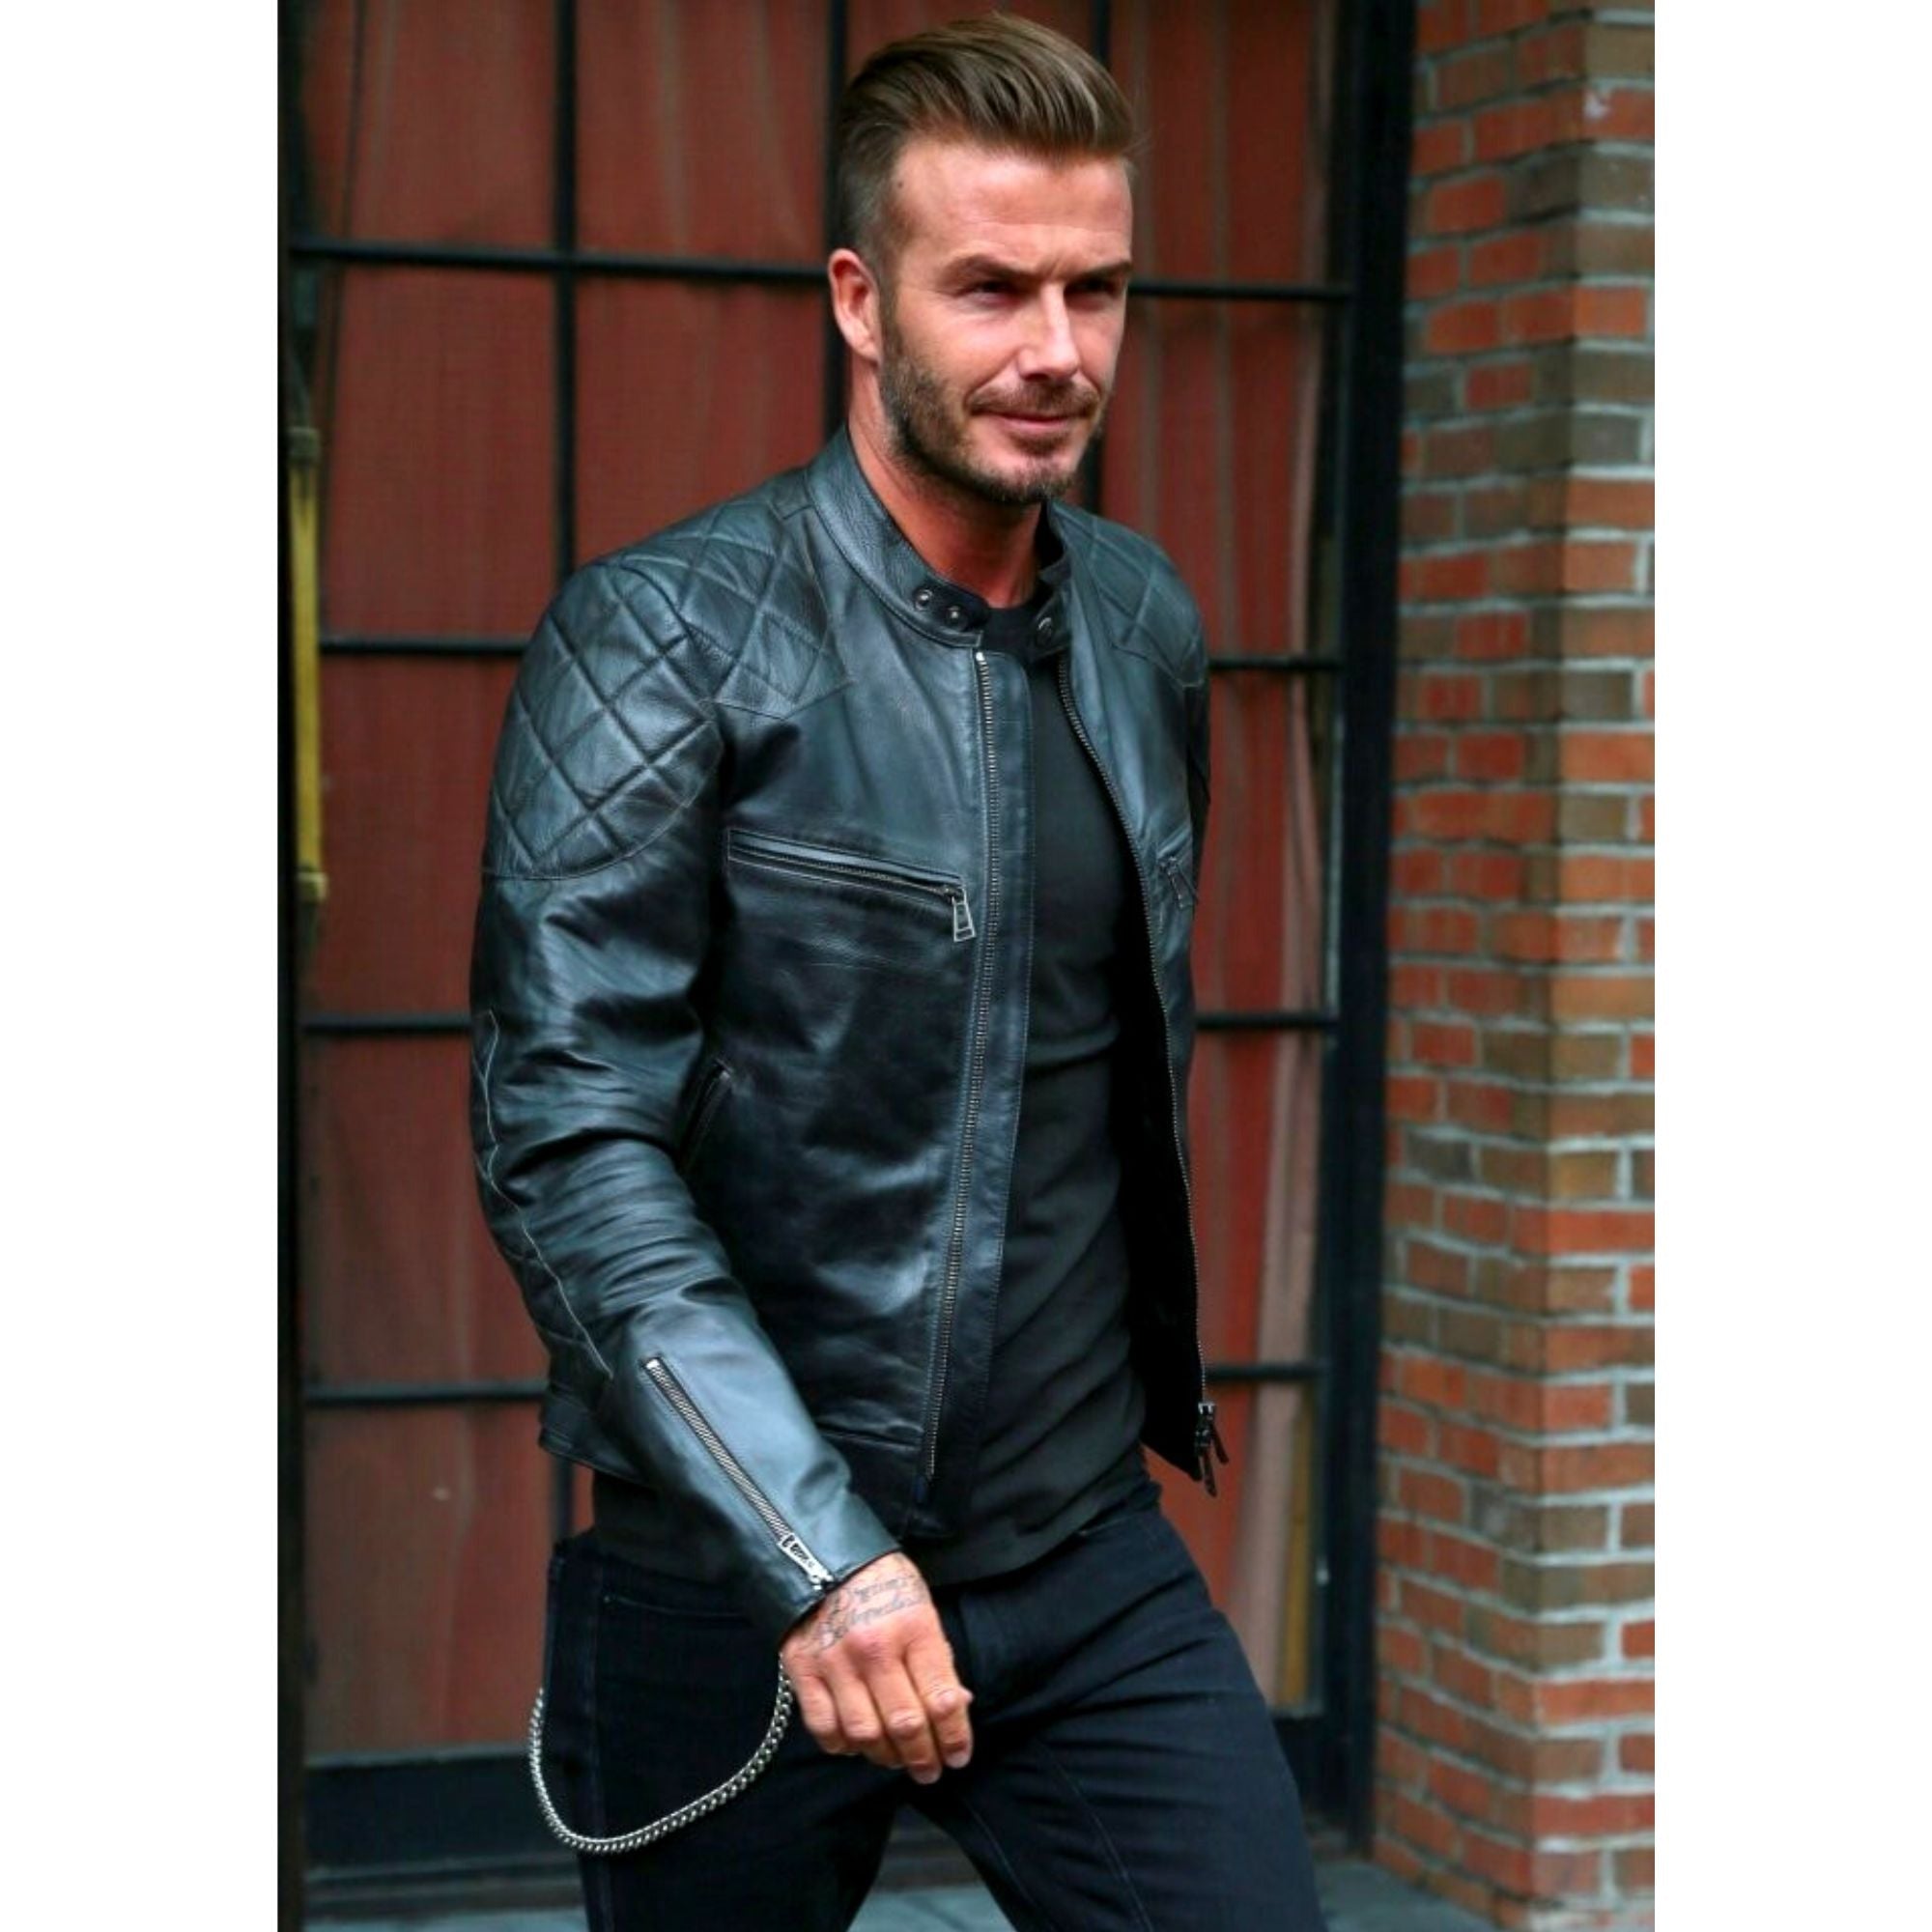 David Beckham Genuine Leather Jacket